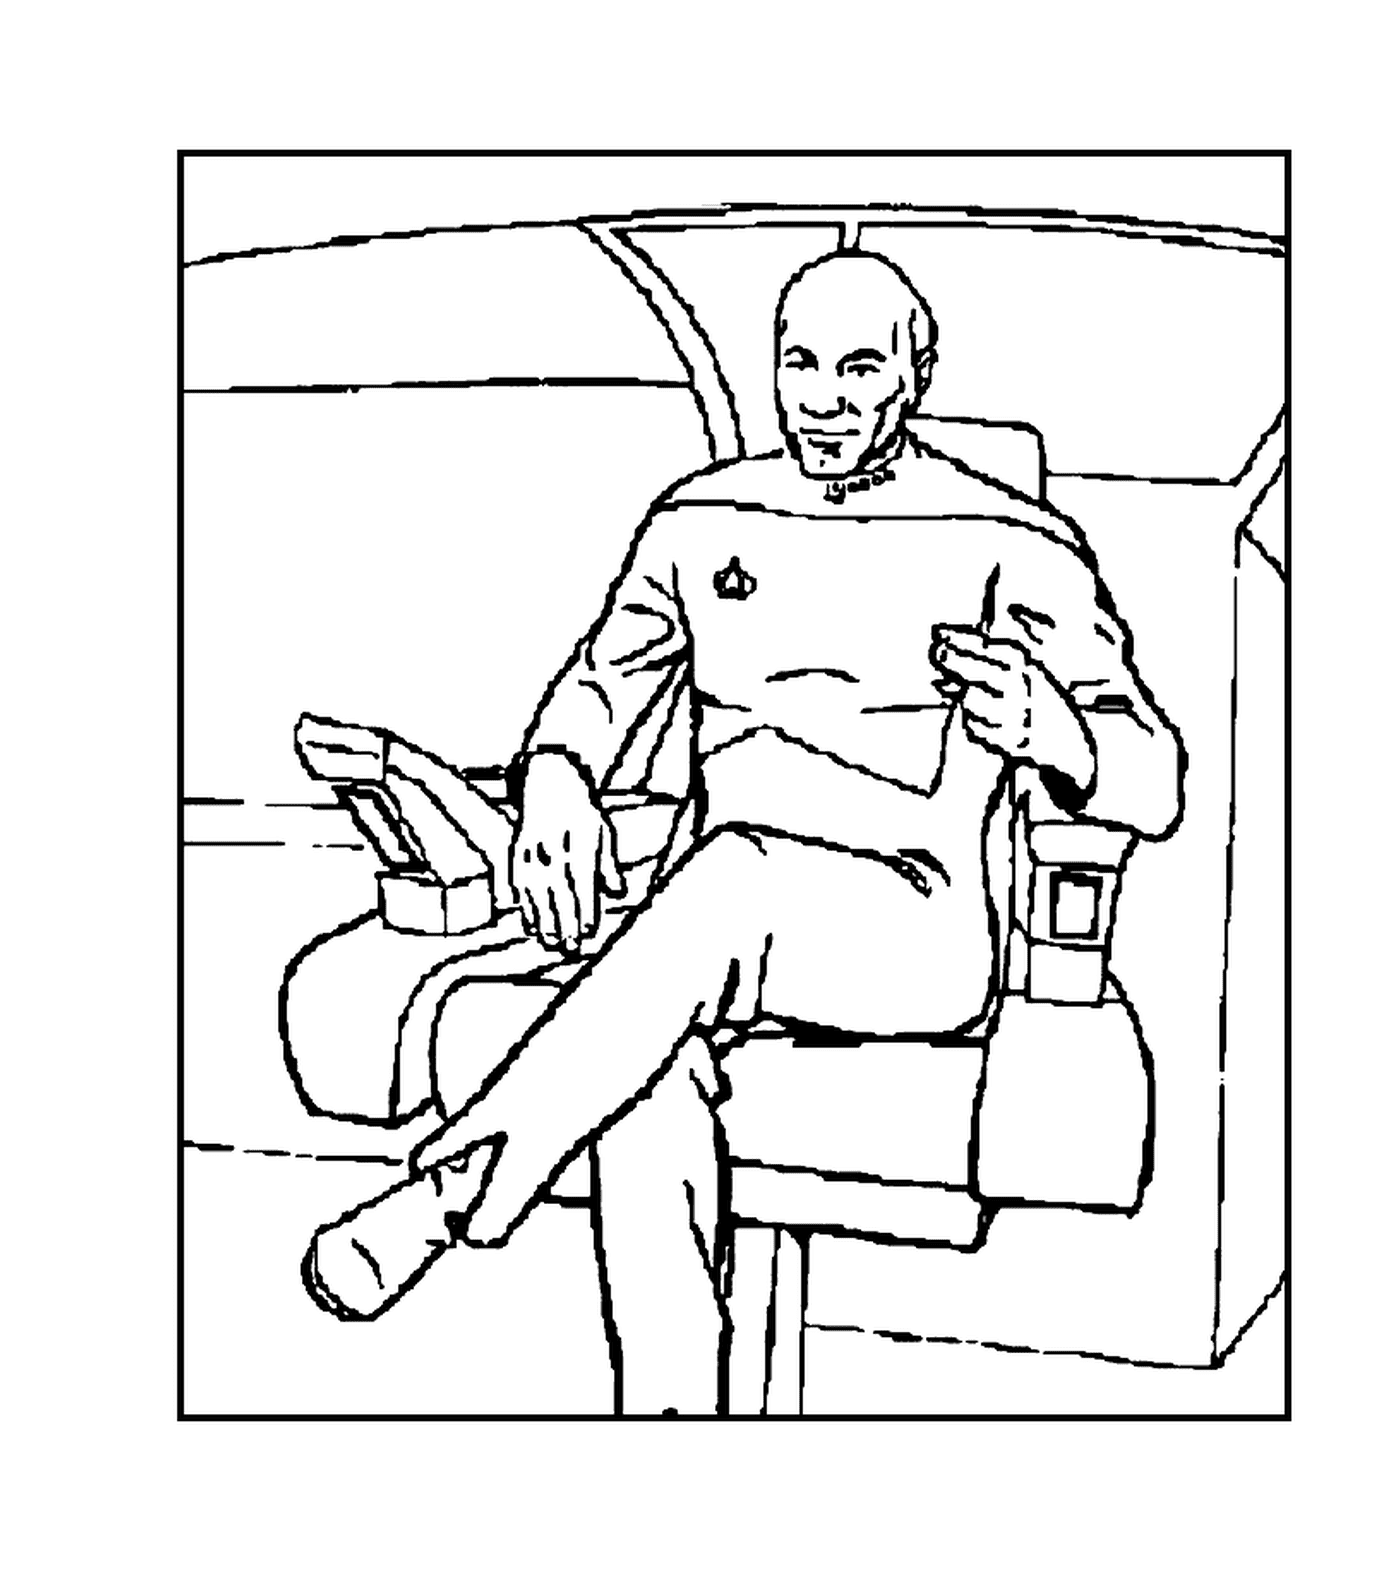  Персонаж Звездного пути в кресле 